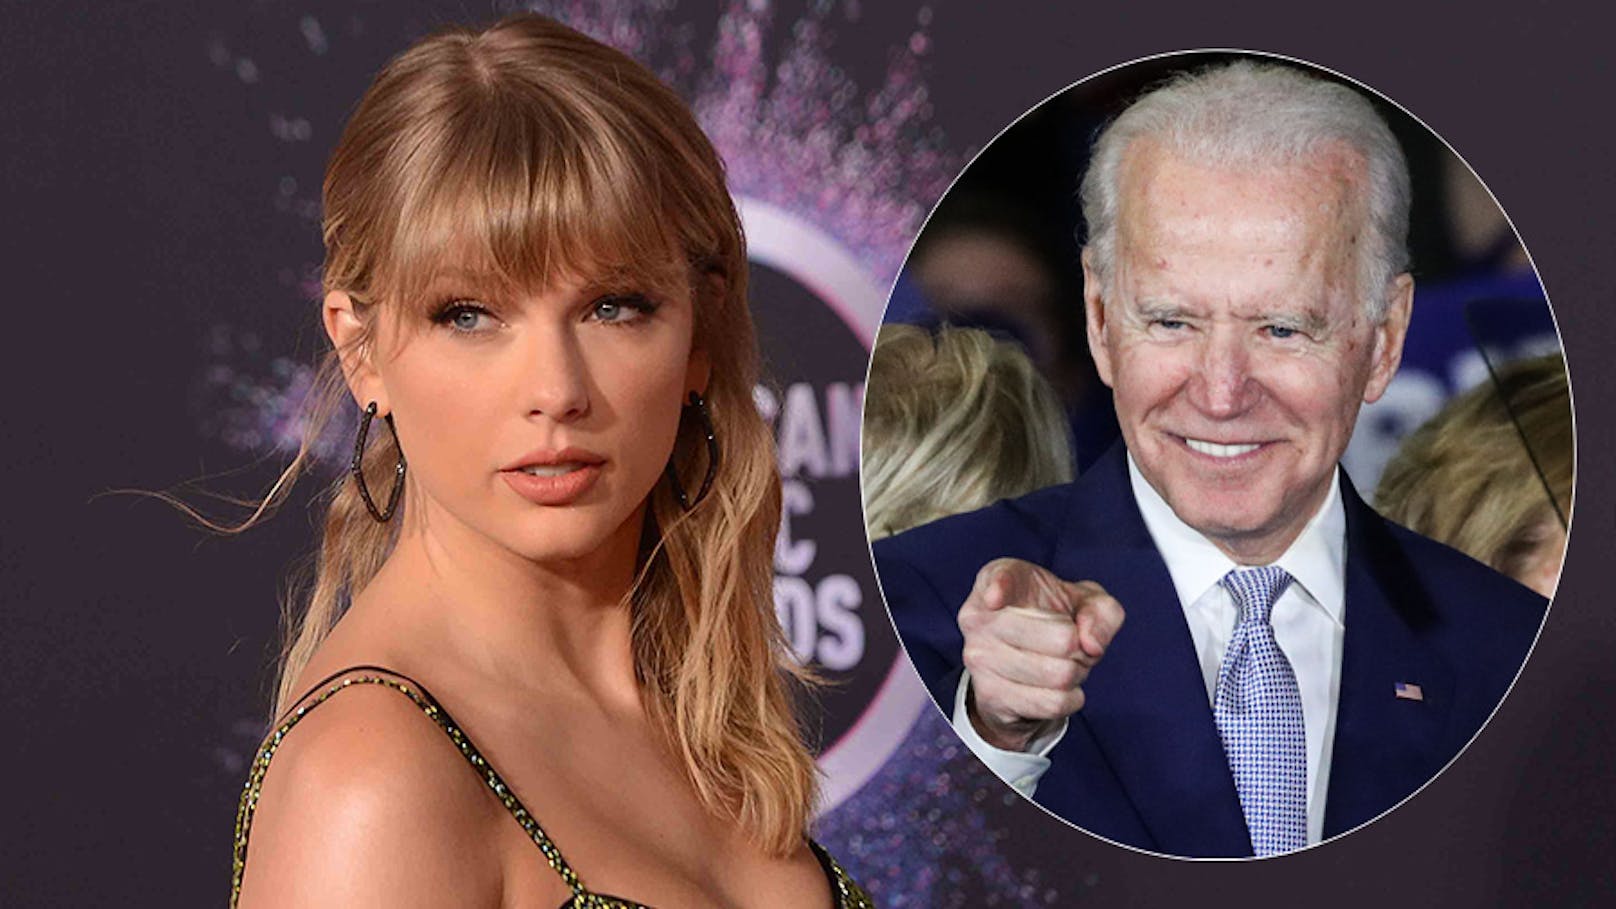 Für <strong>Taylor Swift</strong> steht fest, dass <strong>Joe Biden</strong> nächster US-Präsident werden soll: ""Ich werde voller Stolz für Joe Biden und Kamilla Harris stimmen", verkündet die Sängerin überraschend politisch.